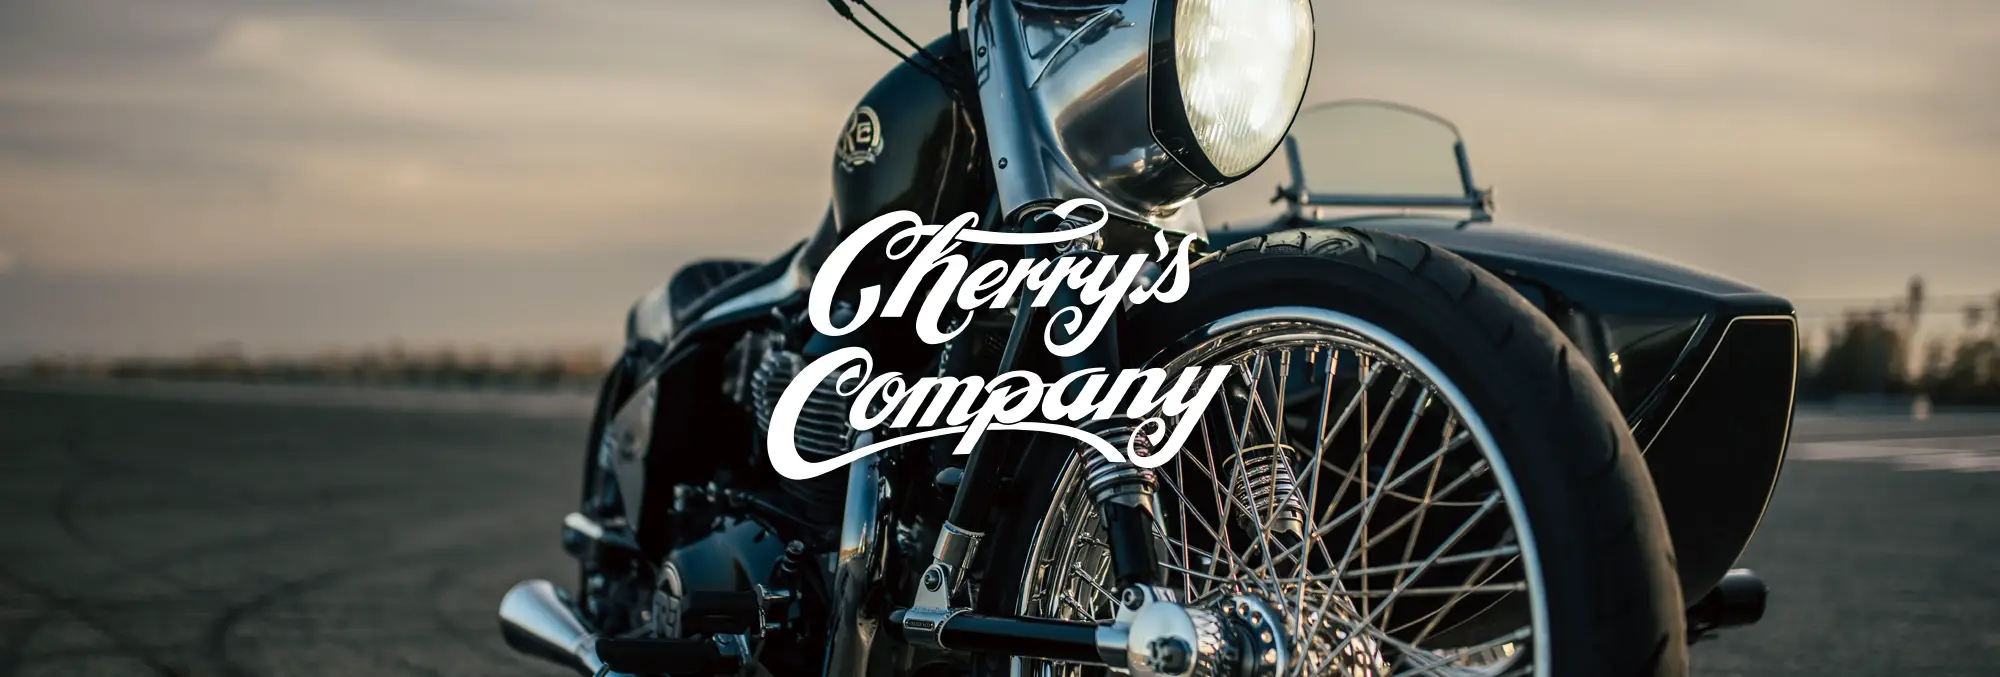 Cherry's Company